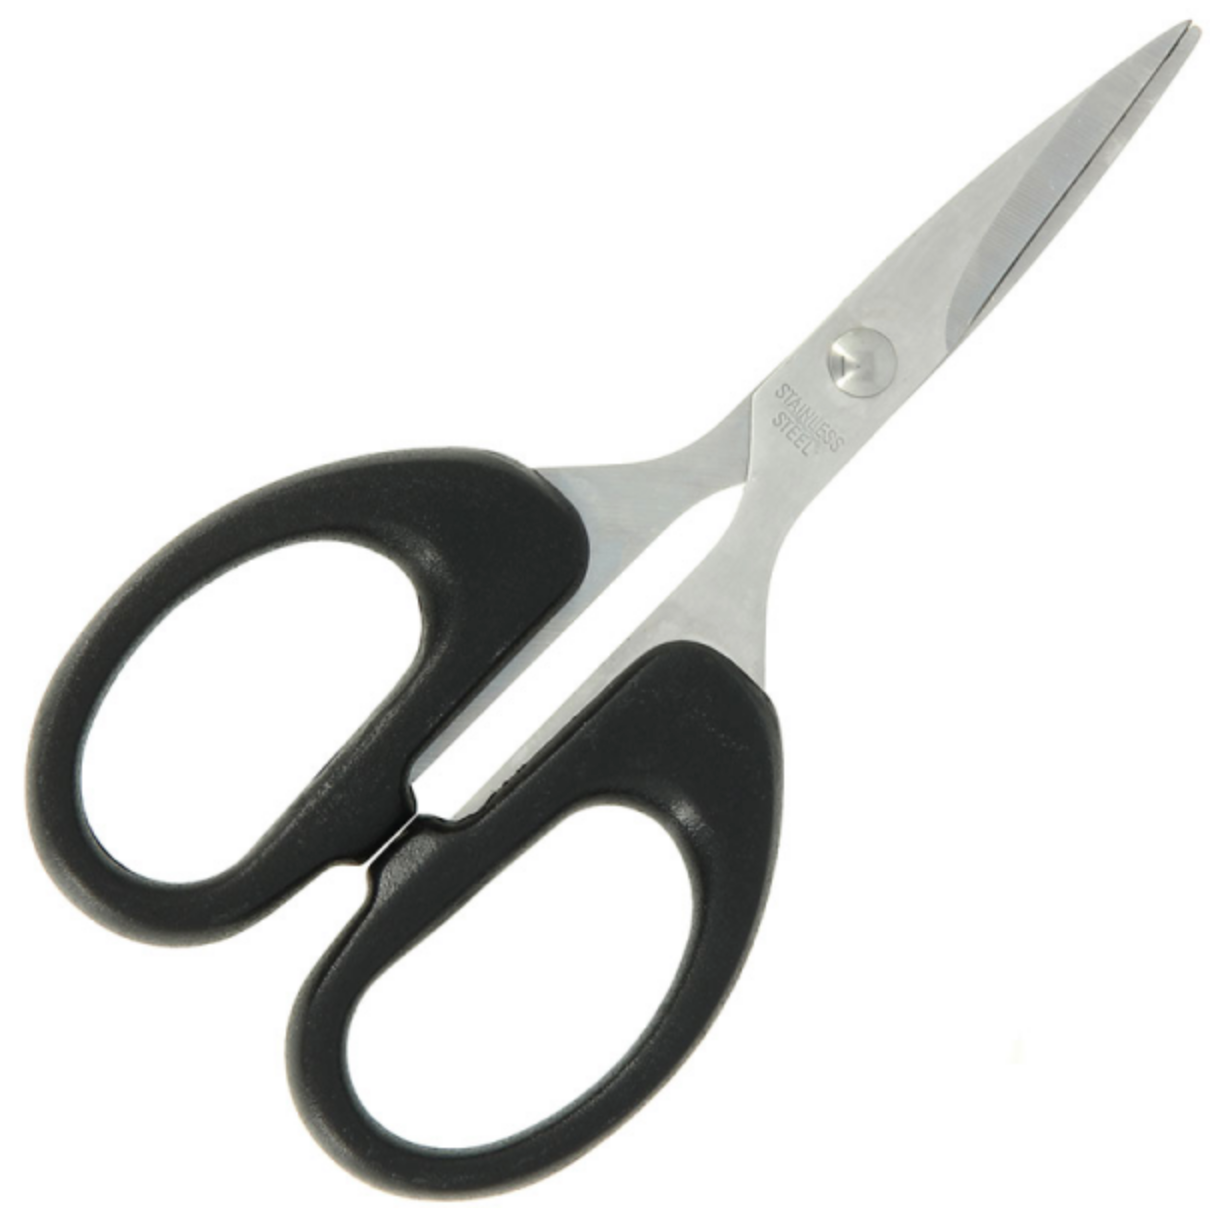 Braid Scissors